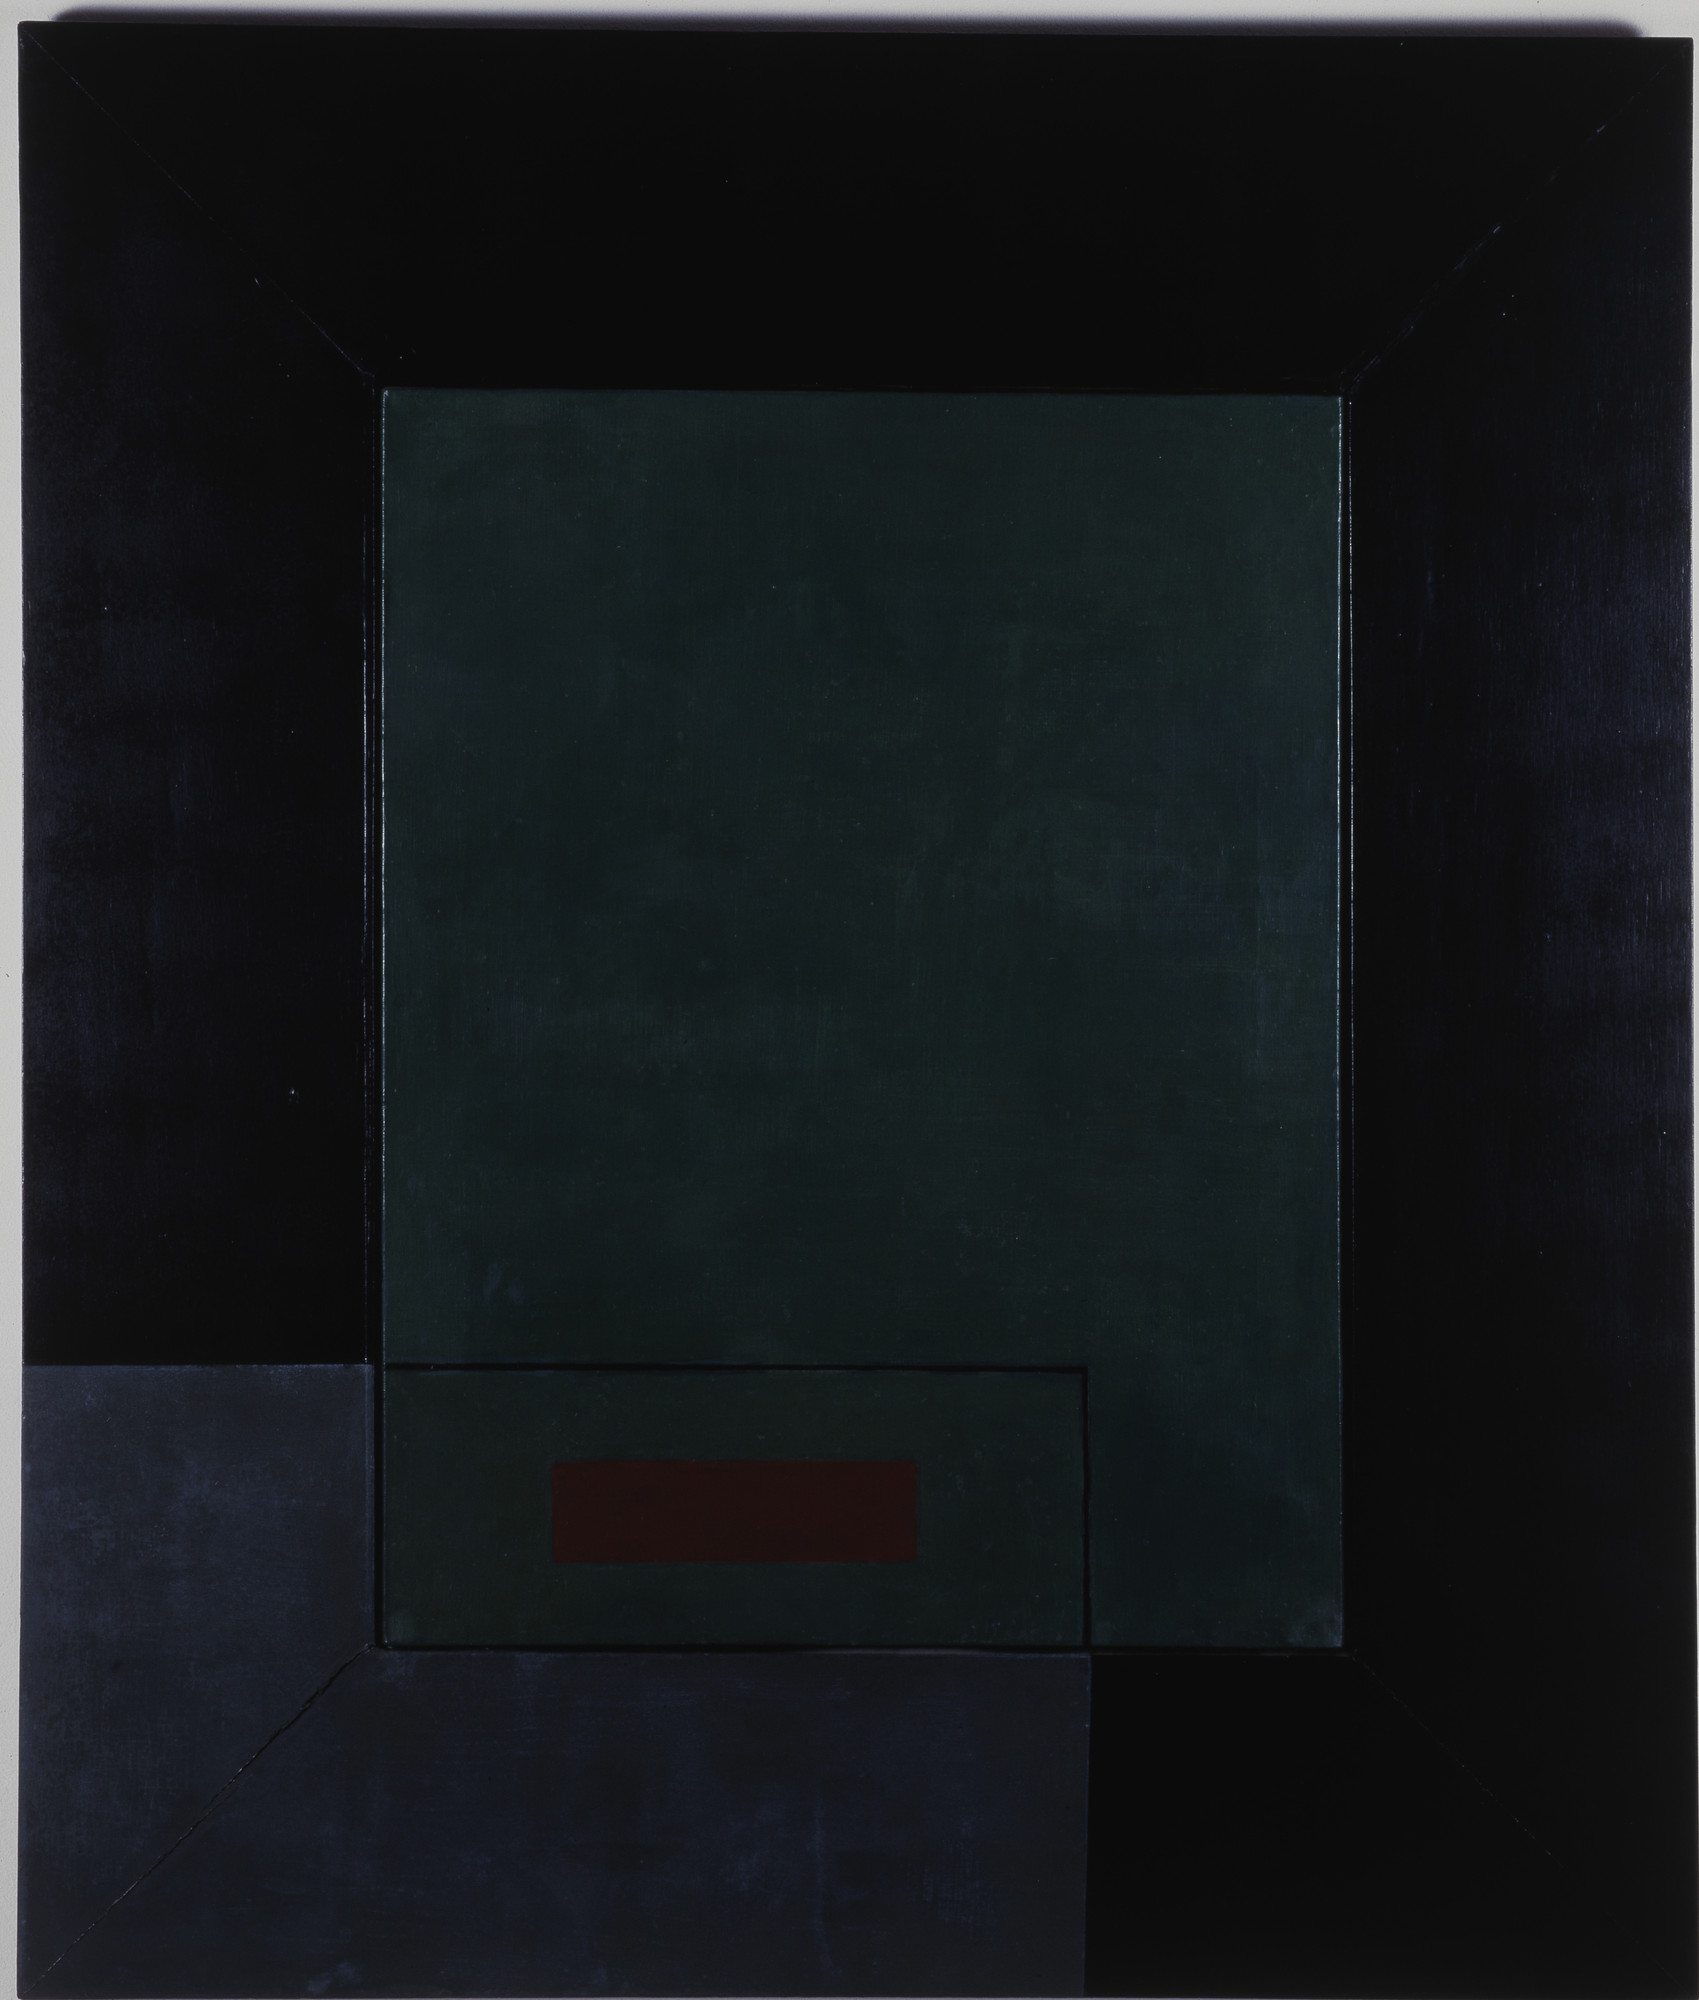 Lygia Clark. _Composição no. 5: Série quebra da moldura (Composition no. 5: Breaking the frame series)_. 1954